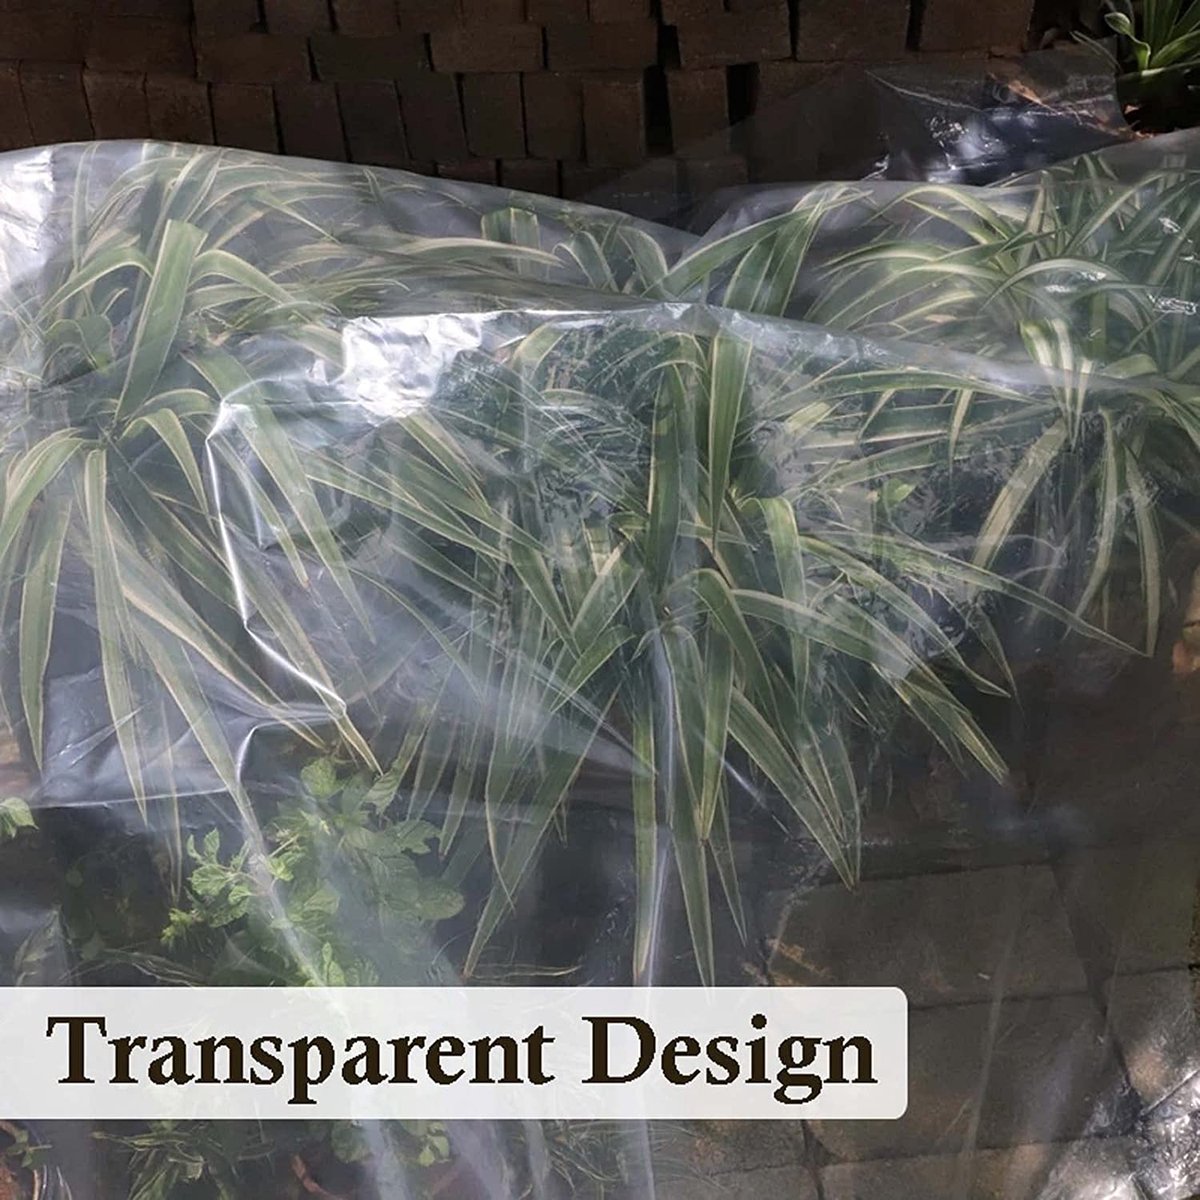 Bâche transparente en plastique épais avec Oeillets en métal Pour camping,  sol, plantes Bâche imperméable 1 x 2 m